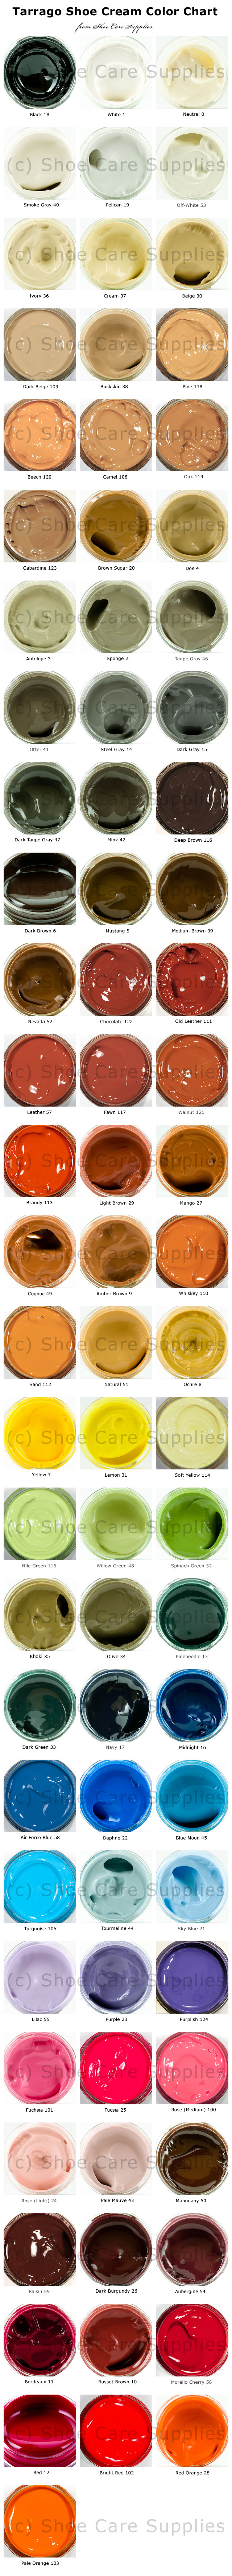 Tarrago Shoe Dye Colour Chart